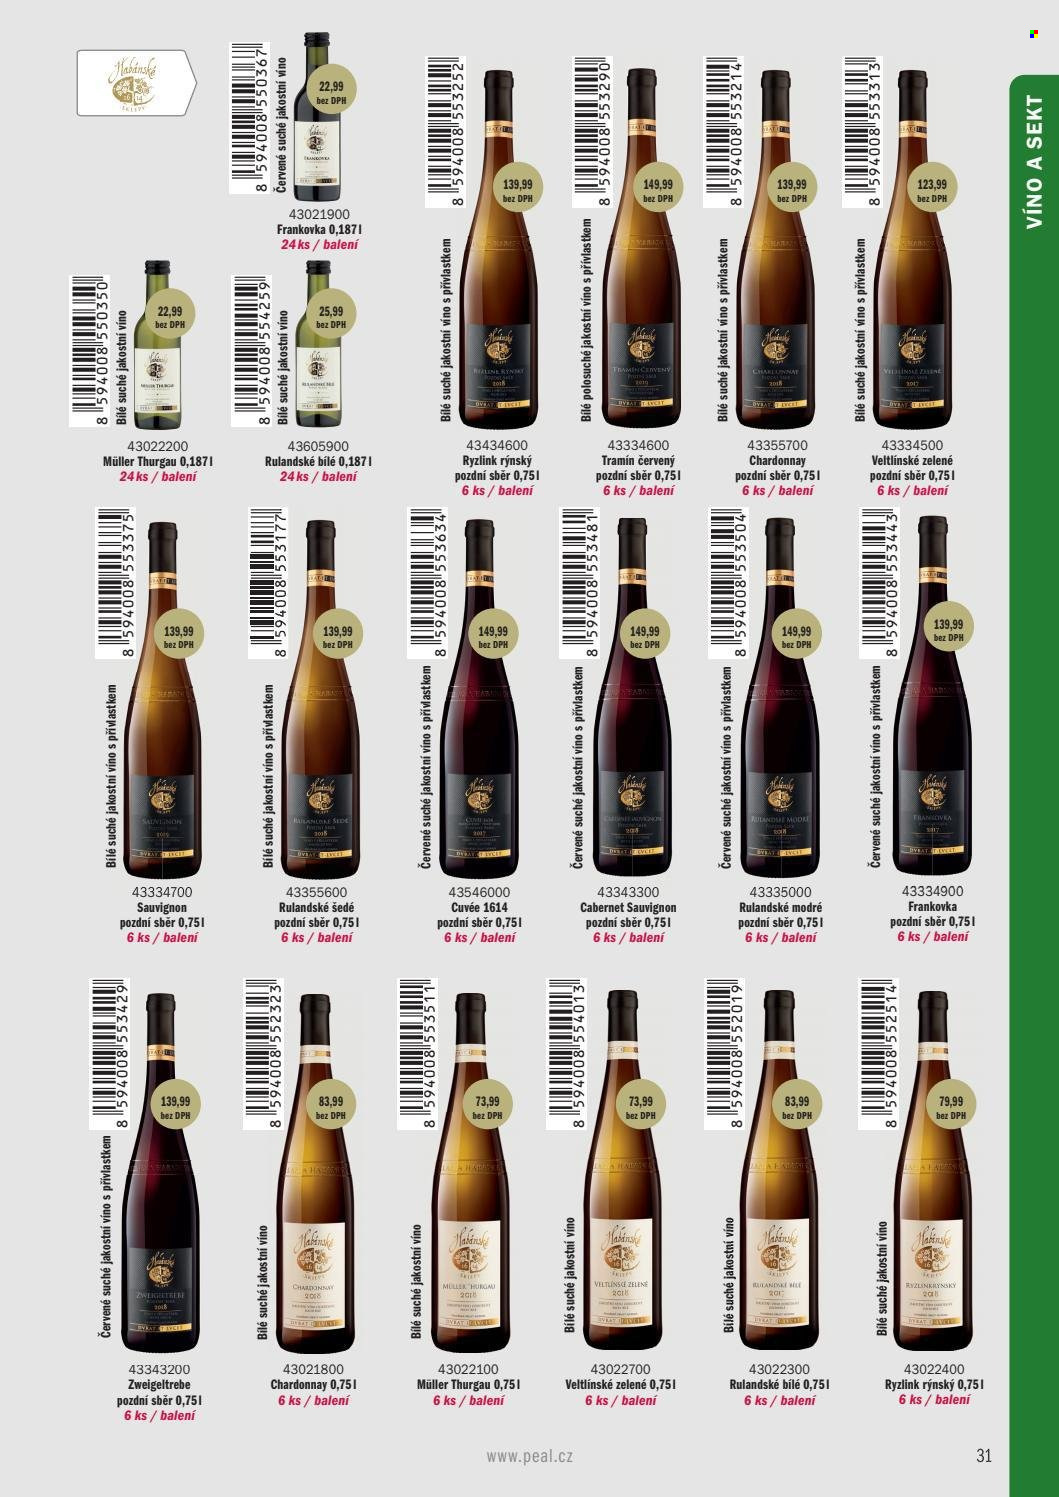 Leták PEAL - Produkty v akci - alkohol, bílé víno, červené víno, sekt, Rulandské šedé, Ryzlink rýnský, Tramín červený, Chardonnay, Müller Thurgau, Rulandské modré, víno, Frankovka, Rulandské bílé, Zweigeltrebe, Veltlínské zelené, Cabernet Sauvignon. Strana 21.